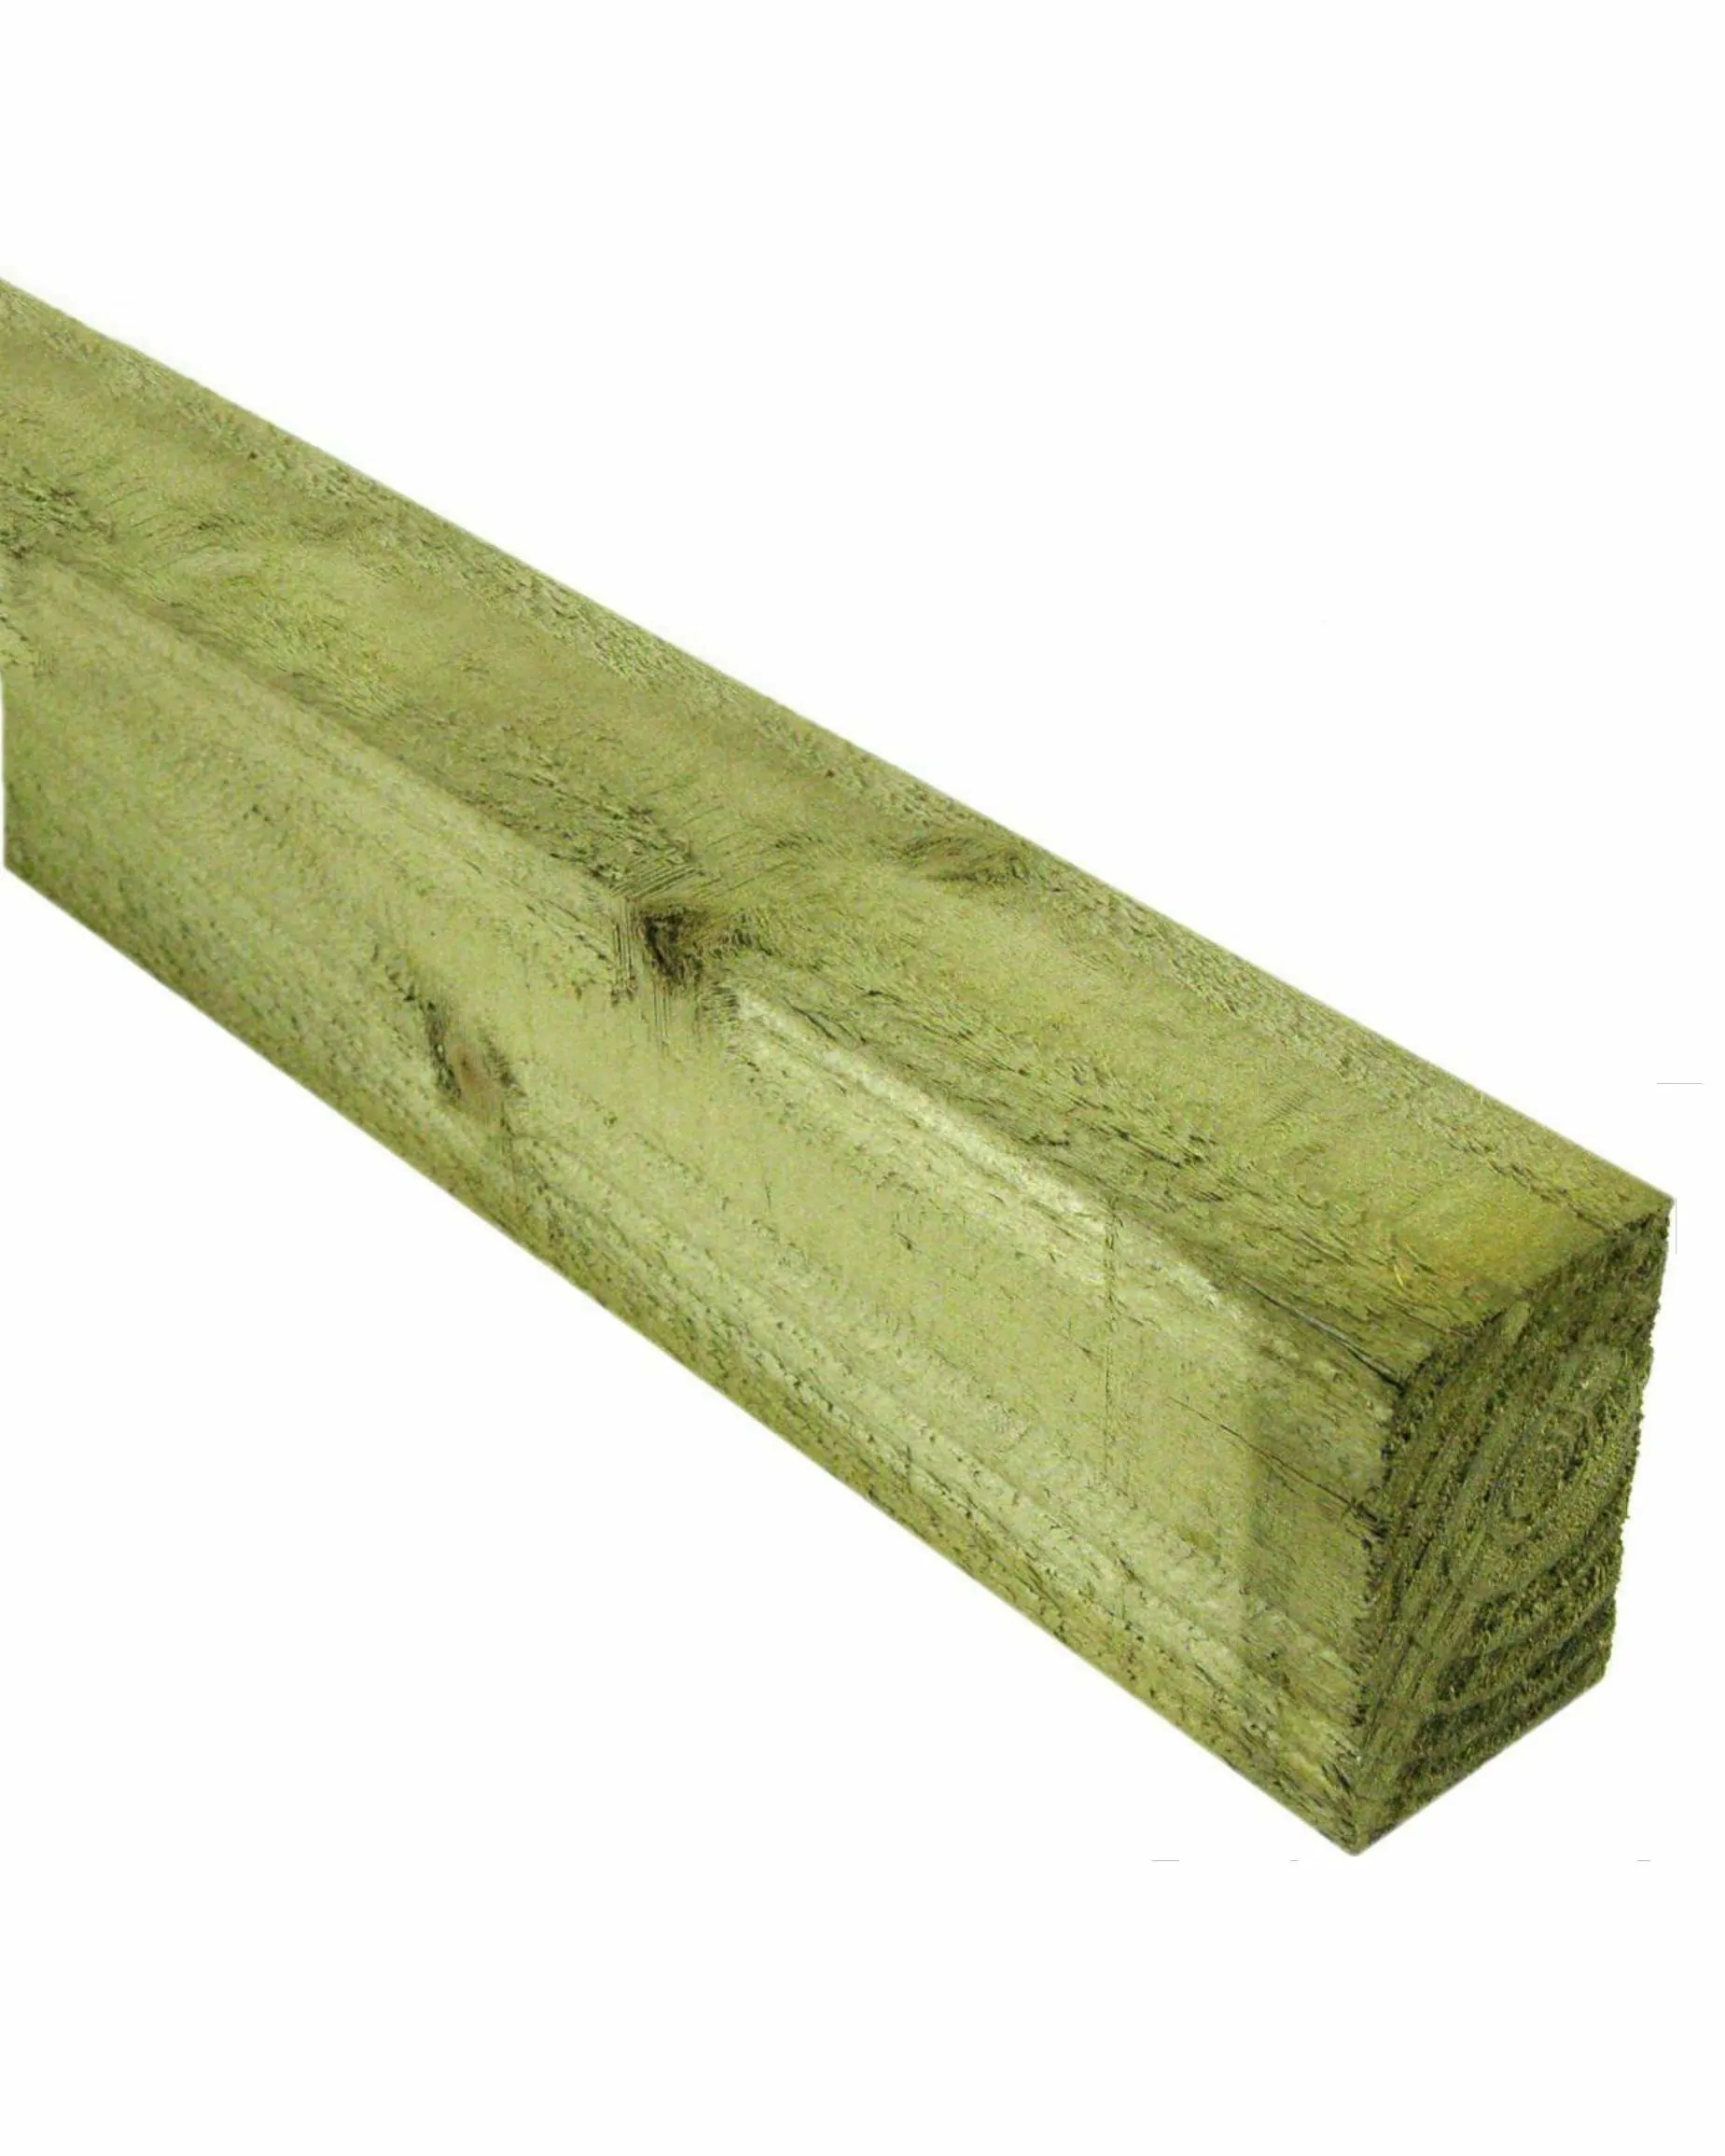 Timber (3" x 2")